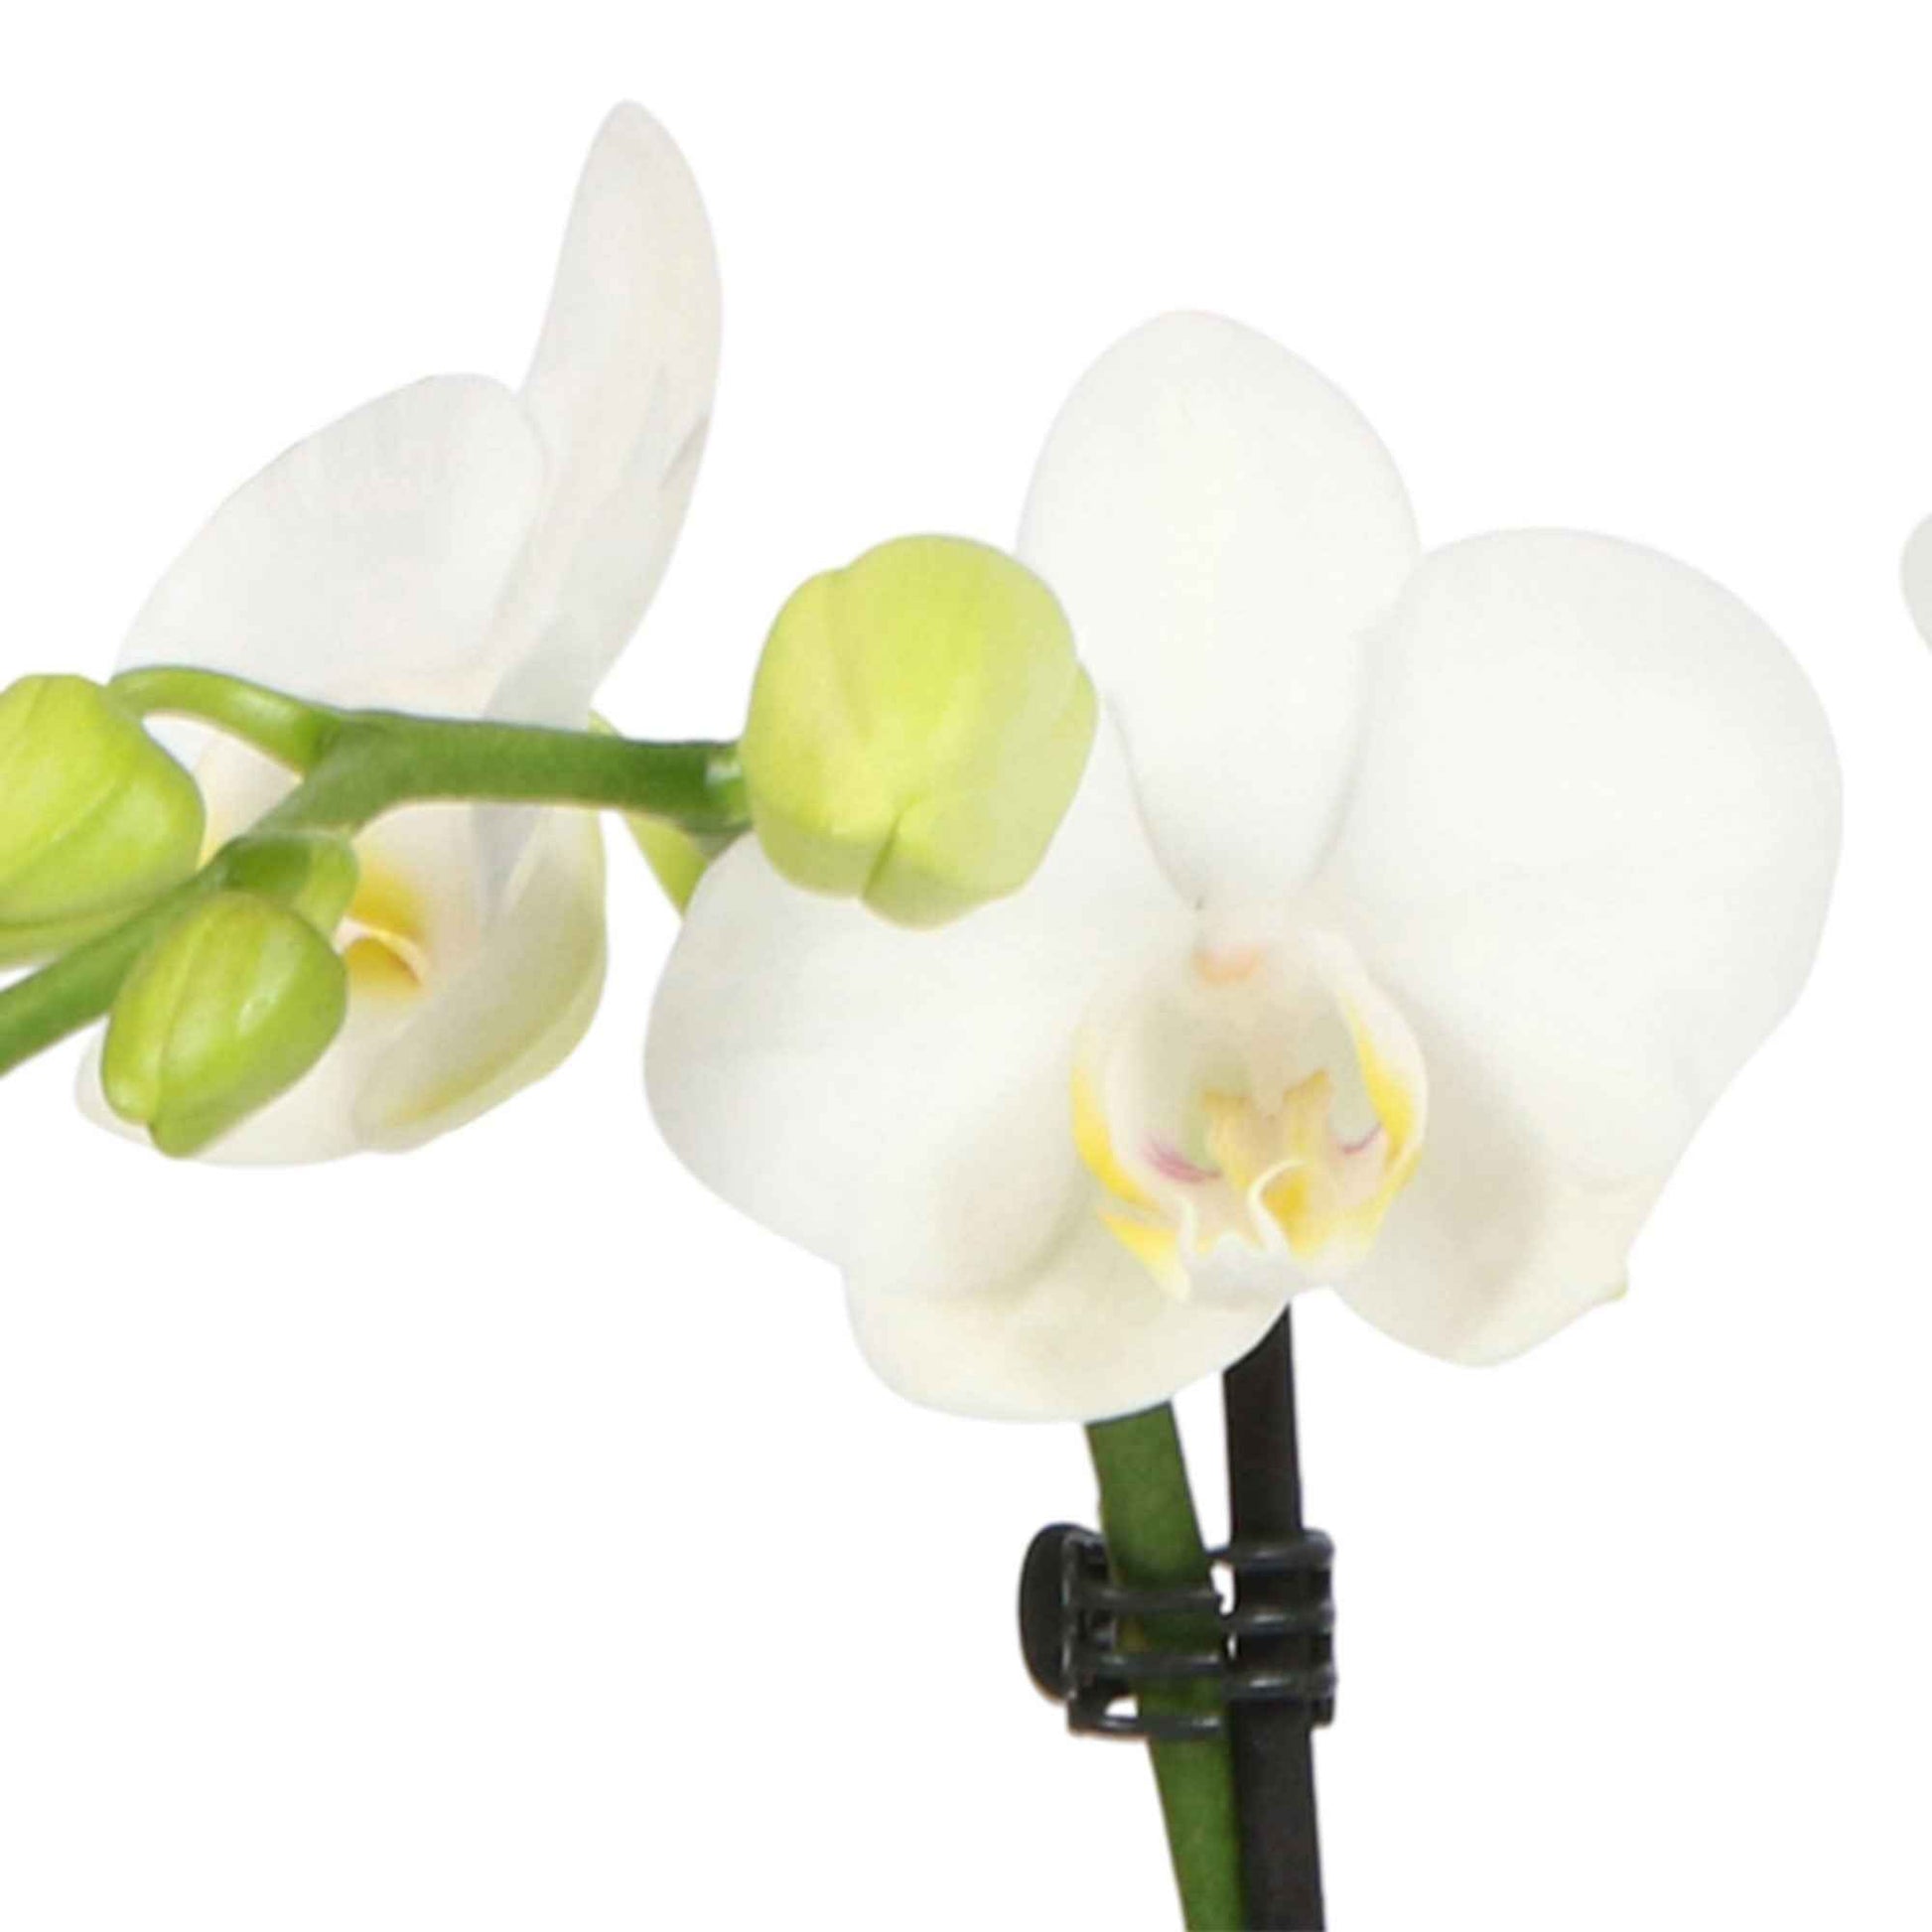 Vlinderorchidee Phalaenopsis 'Amabilis' incl. sierpot grijs - Binnenplanten in sierpot